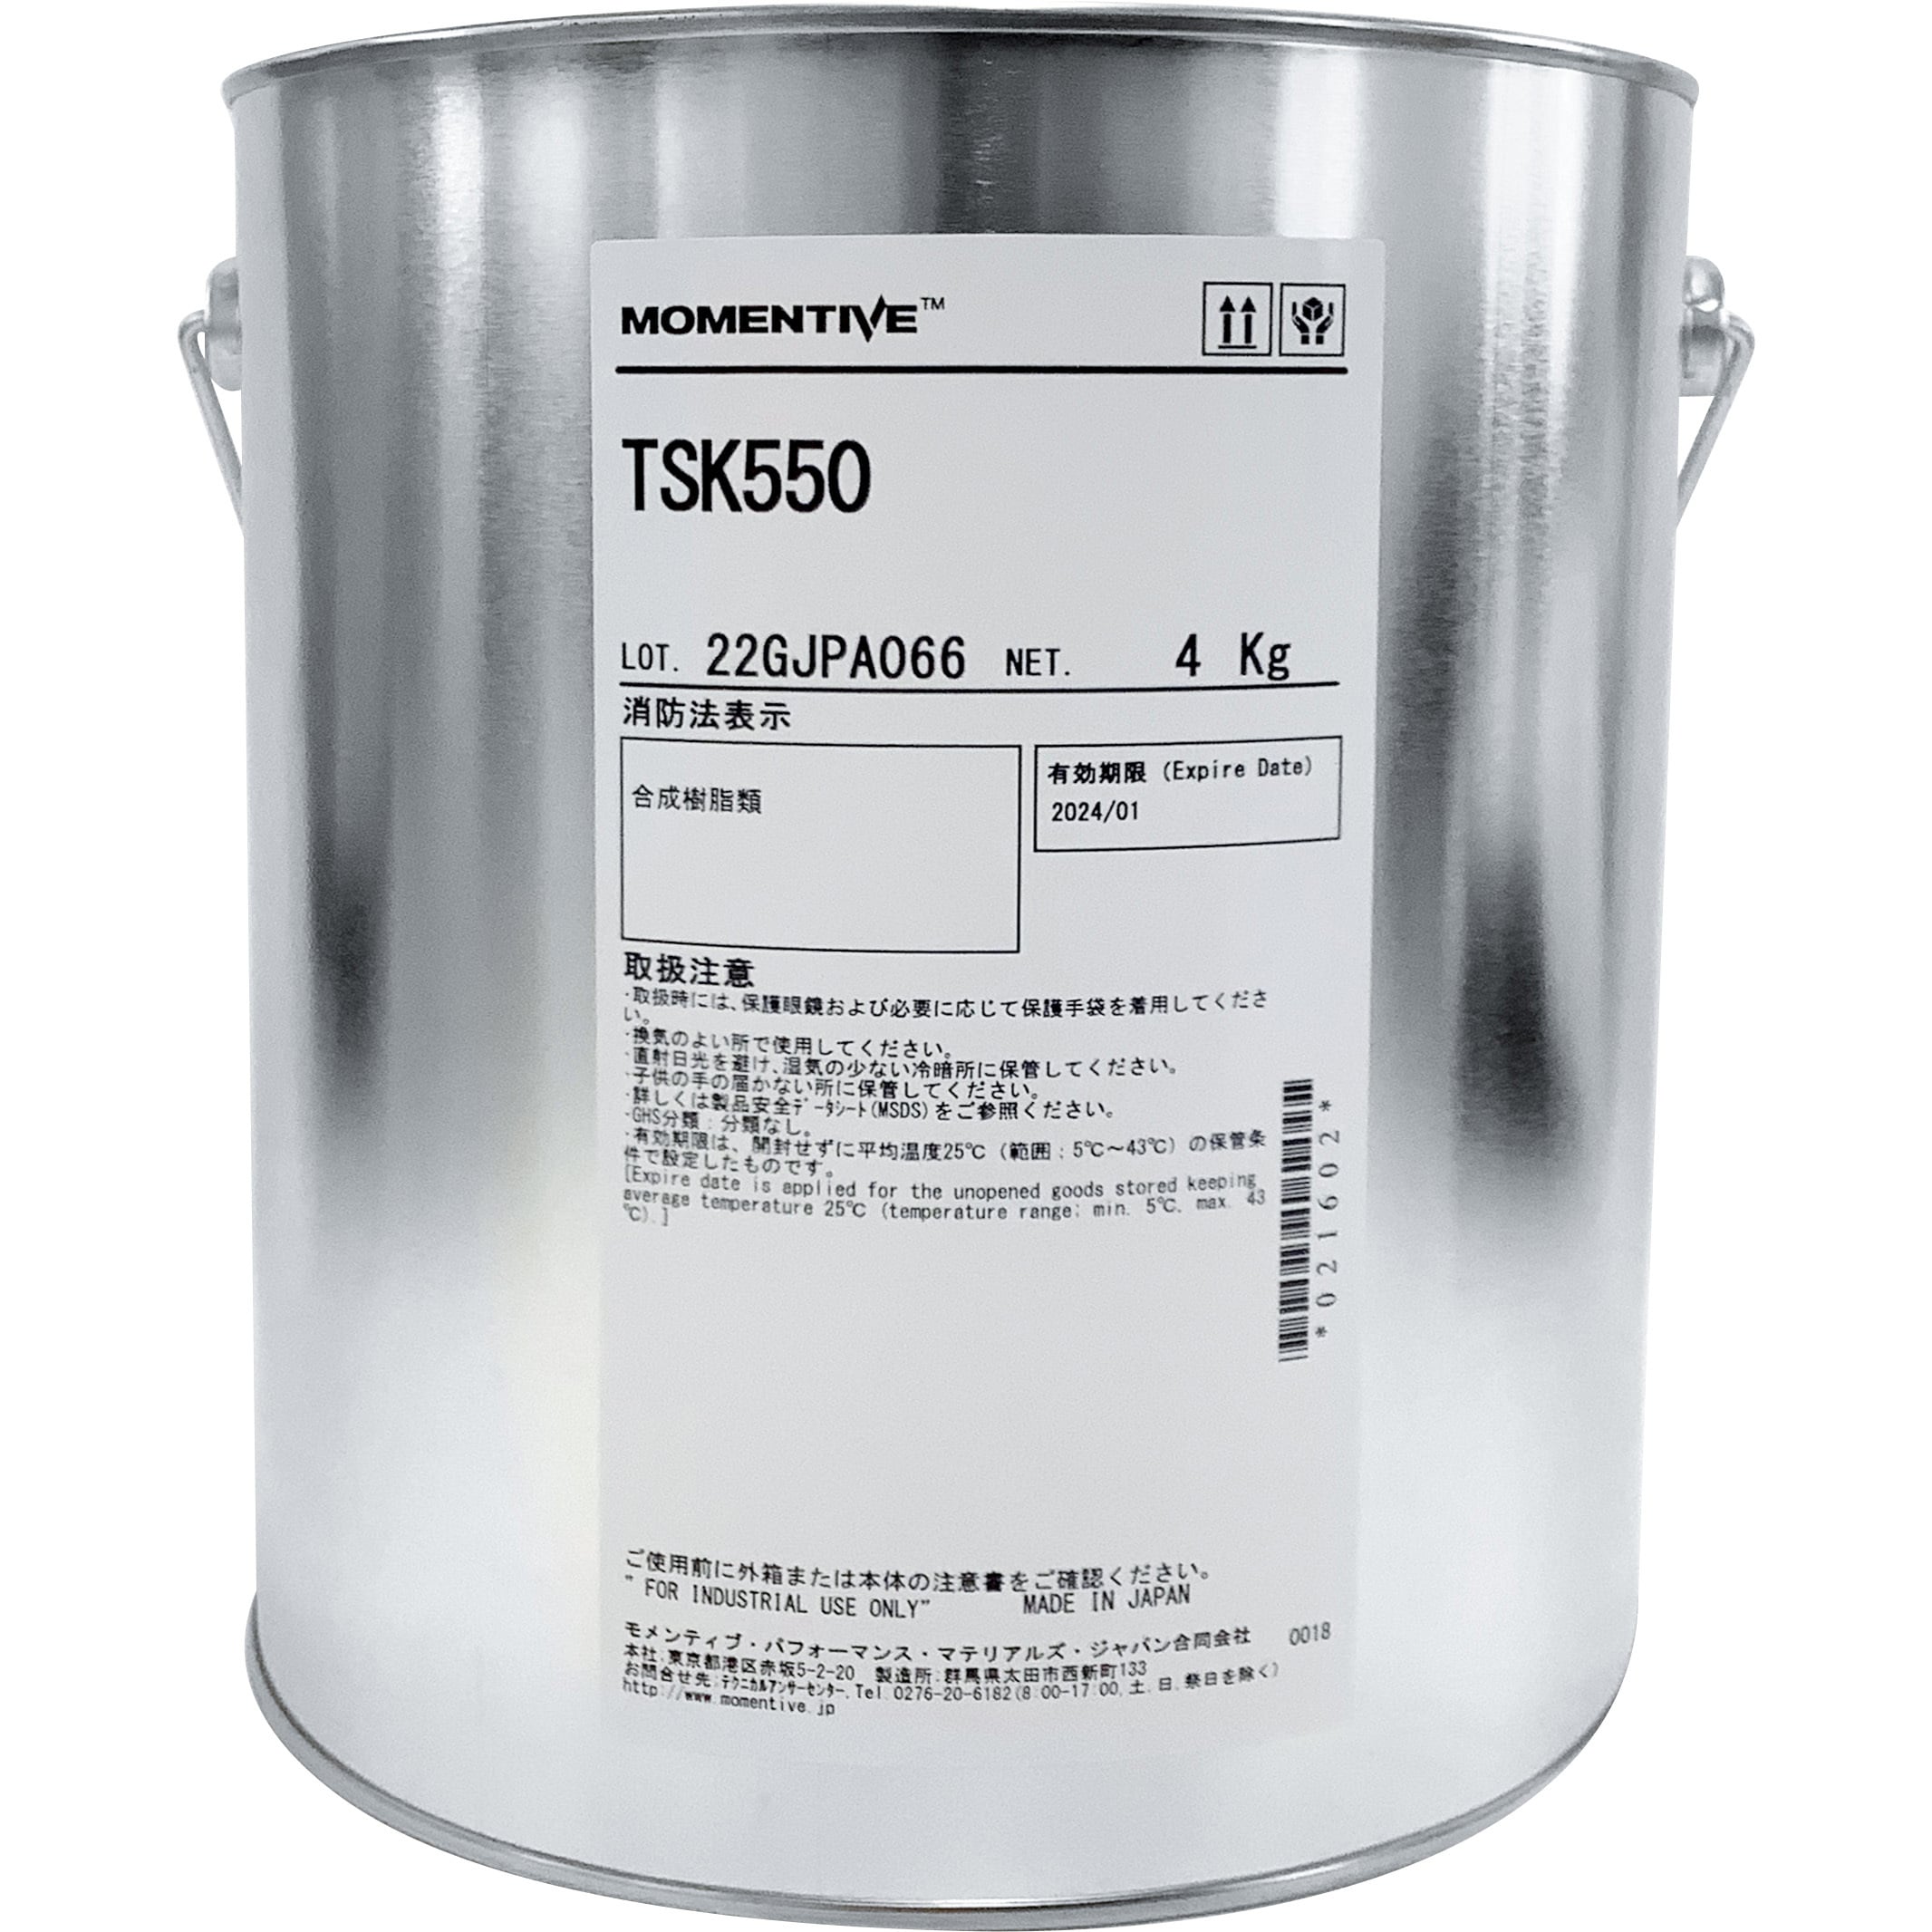 TSK-550-4 シリコーンオイルコンパウンド 1缶(4kg) モメンティブ